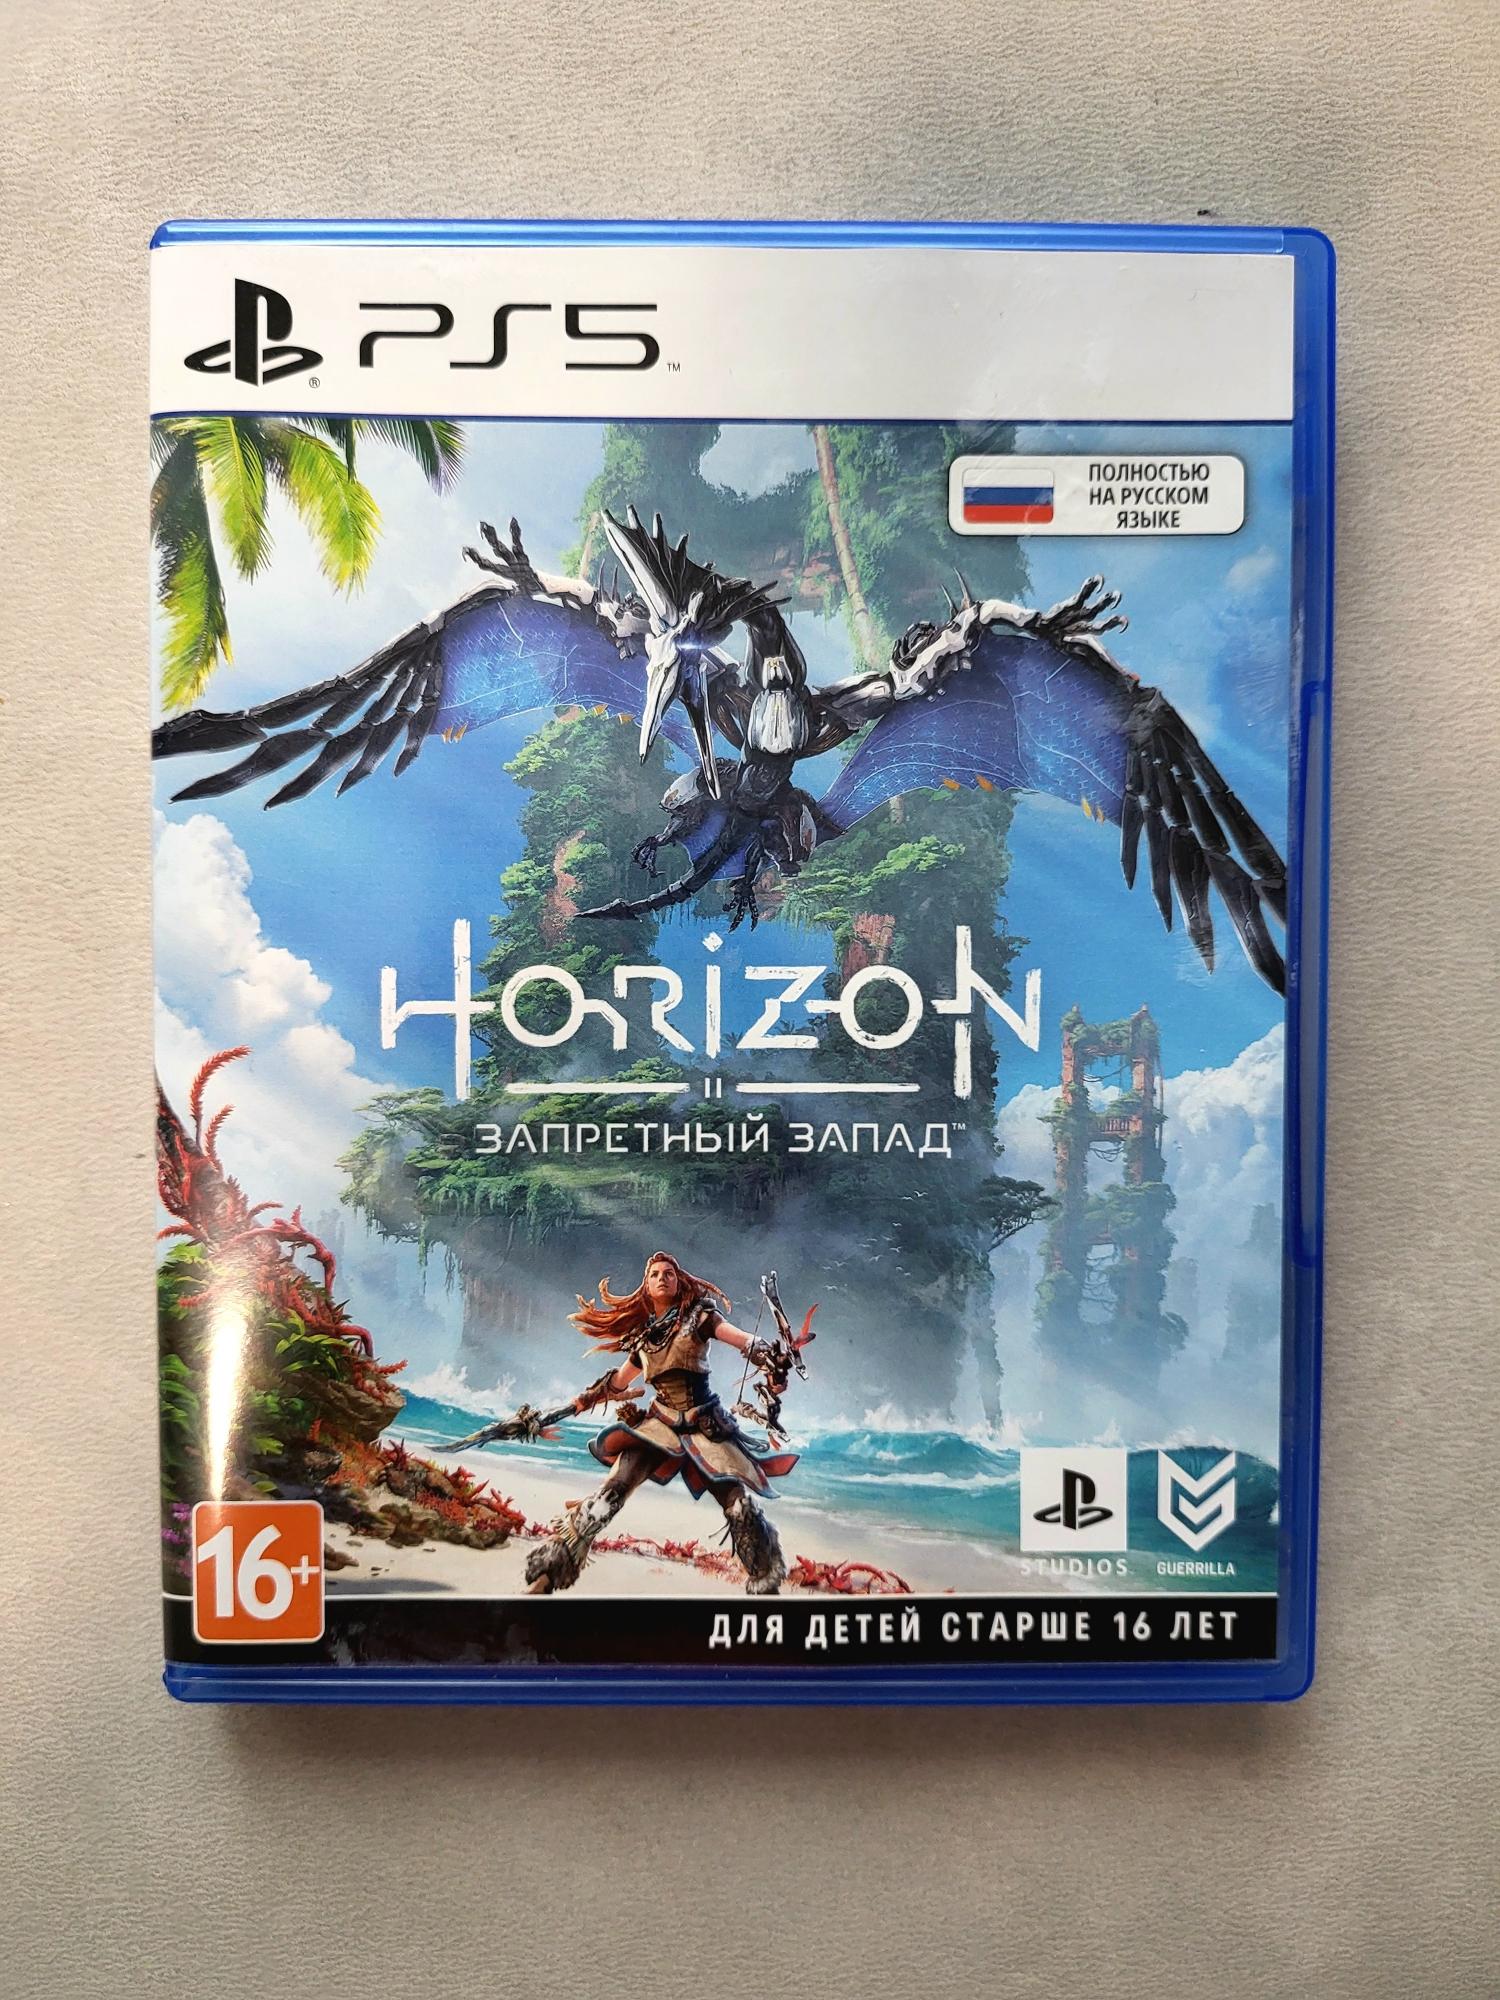 Игра horizon ps5. Horizon Запретный Запад пс5. Horizon Forbidden West ps4 обложка. Horizon Запретный Запад диск пс4. Horizon Forbidden West ps5 диск.